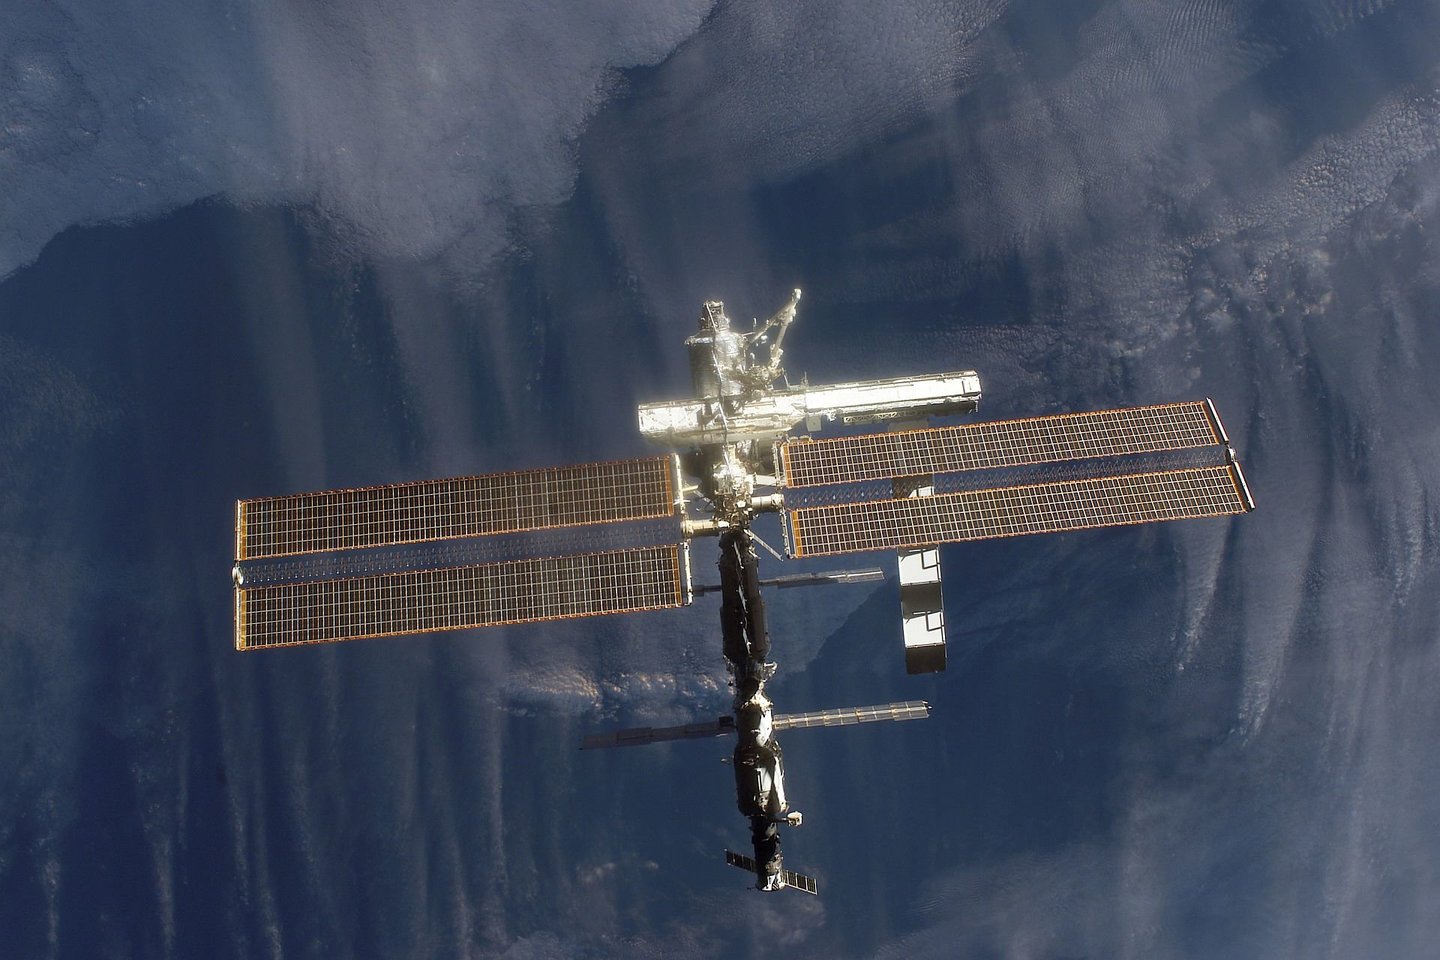  Tarptautinės kosminės stoties (TKS) įgula pašalino visus praeitą naktį aptiktus gedimus.<br> NASA nuotr.